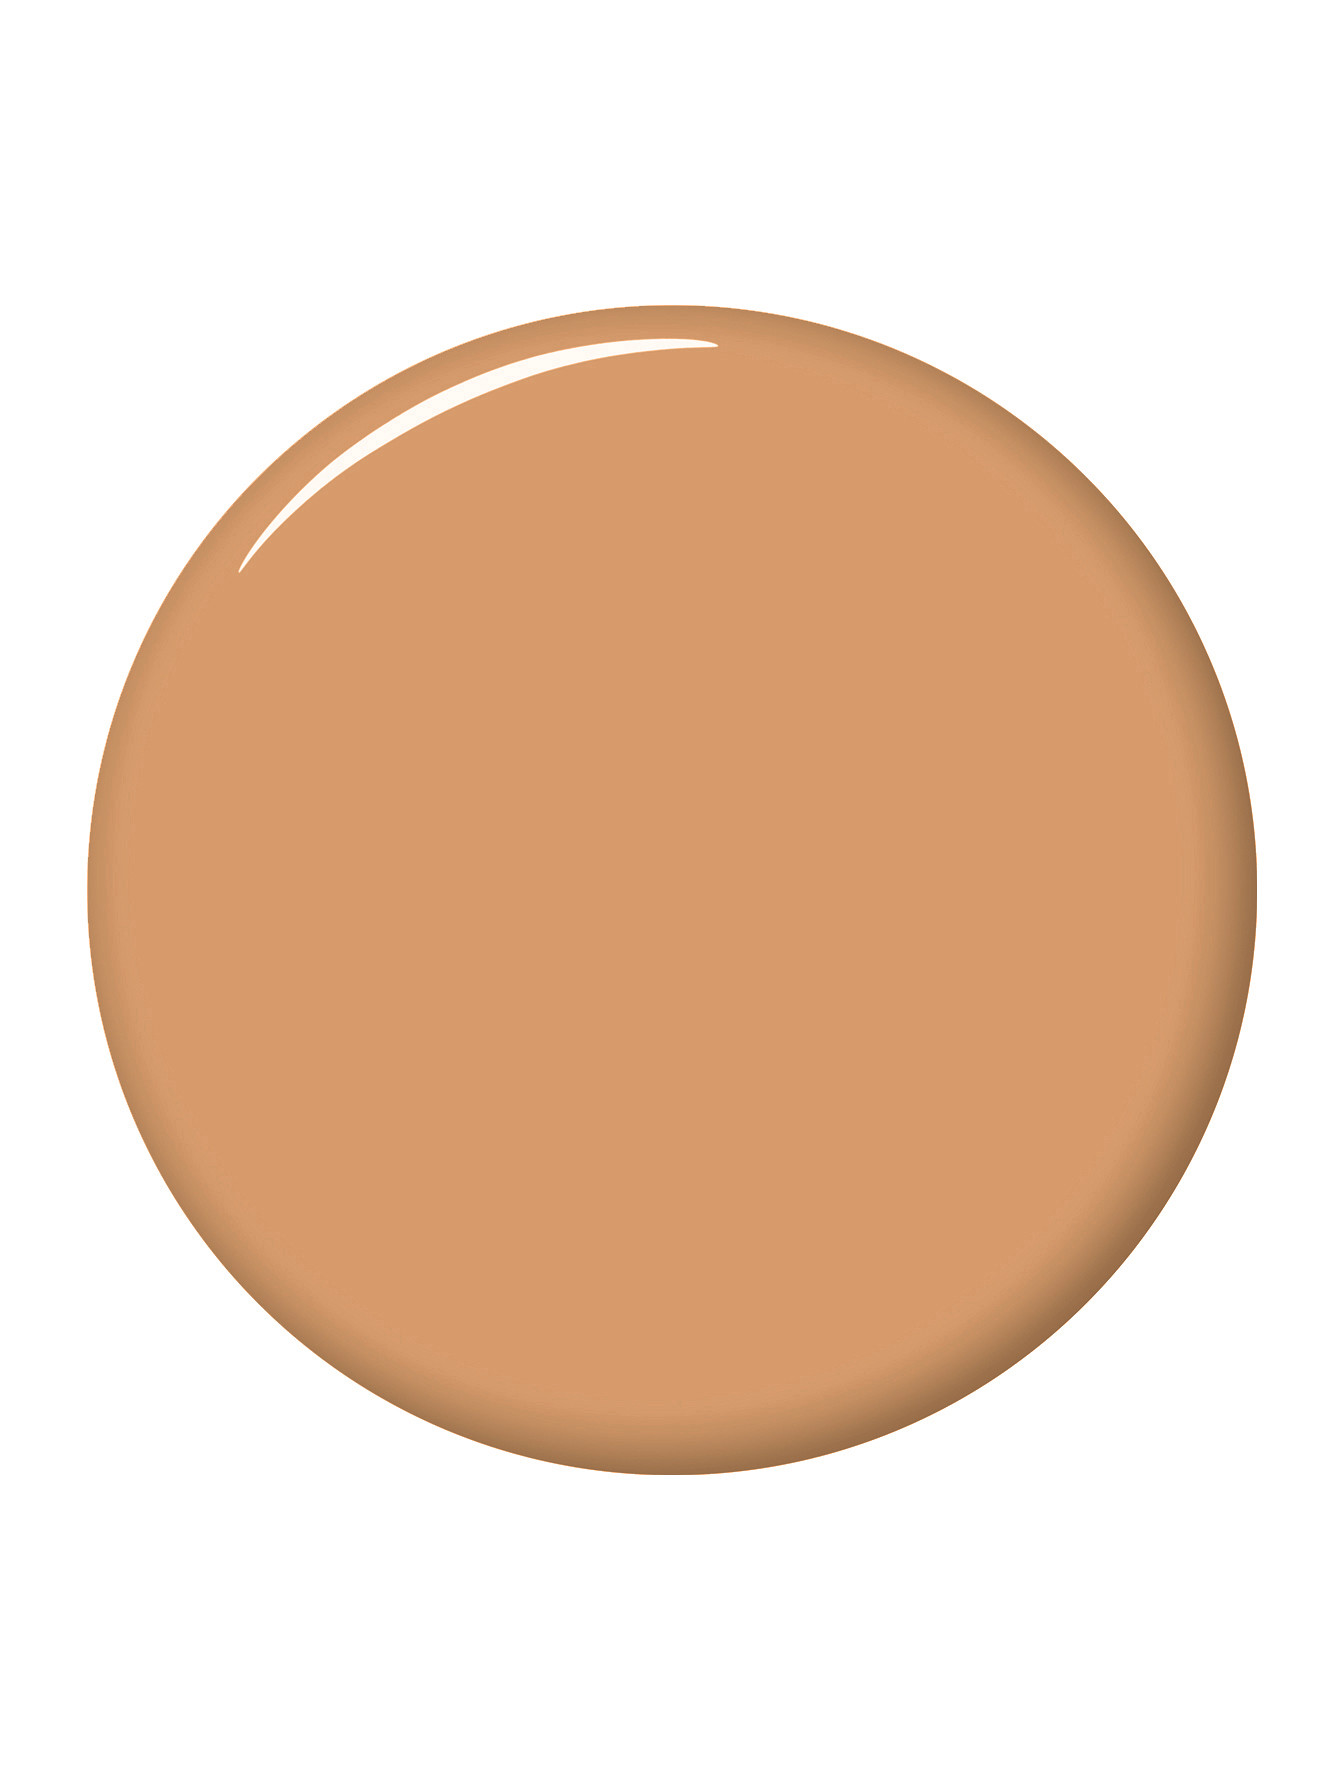 BB крем-кушон 2C2 Pale Almond Double Wear - Общий вид